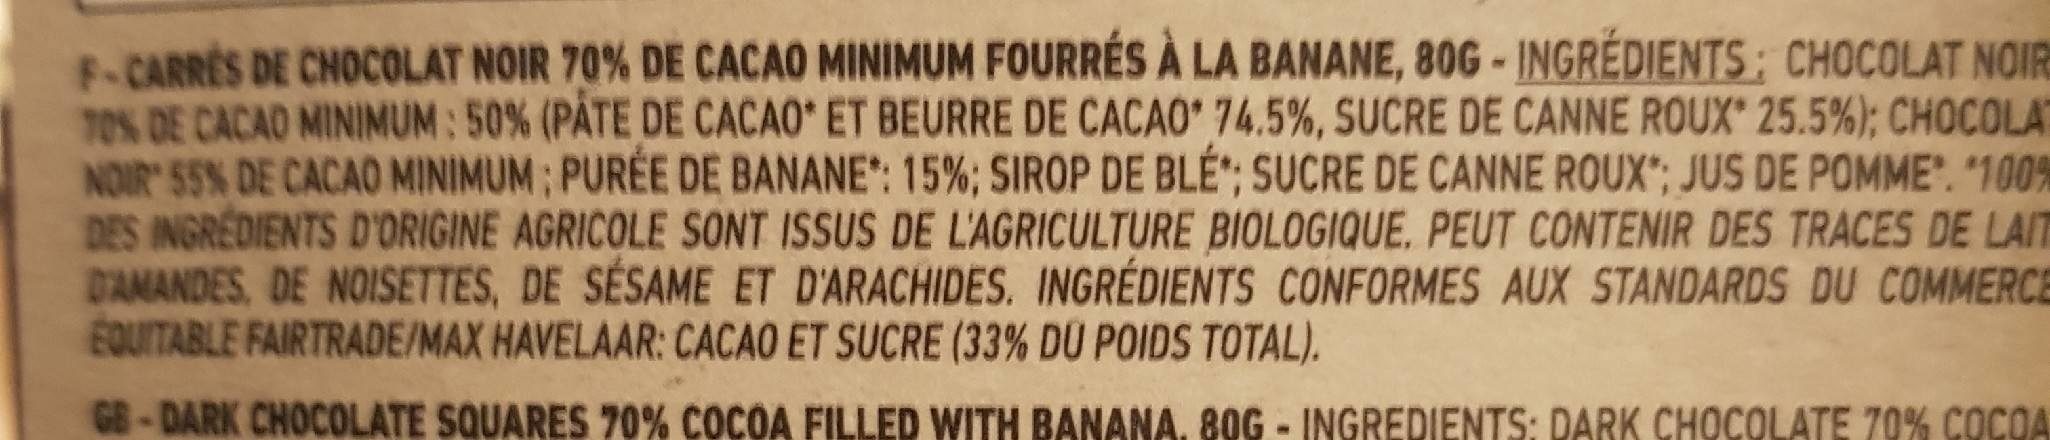 Chocolat banane - Ingredients - fr